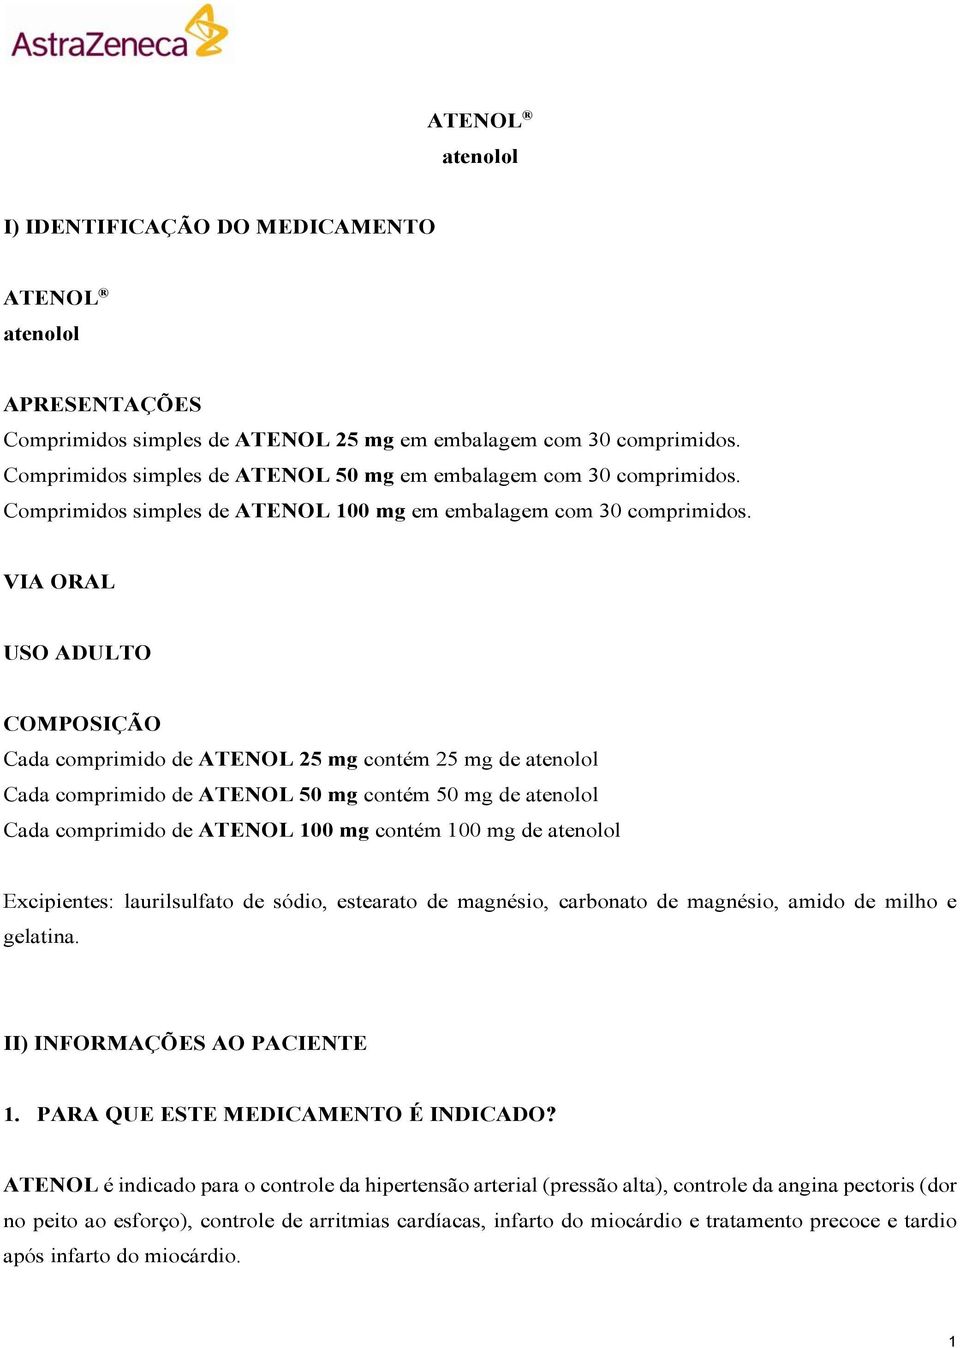 VIA ORAL USO ADULTO COMPOSIÇÃO Cada comprimido de ATENOL 25 mg contém 25 mg de atenolol Cada comprimido de ATENOL 50 mg contém 50 mg de atenolol Cada comprimido de ATENOL 100 mg contém 100 mg de